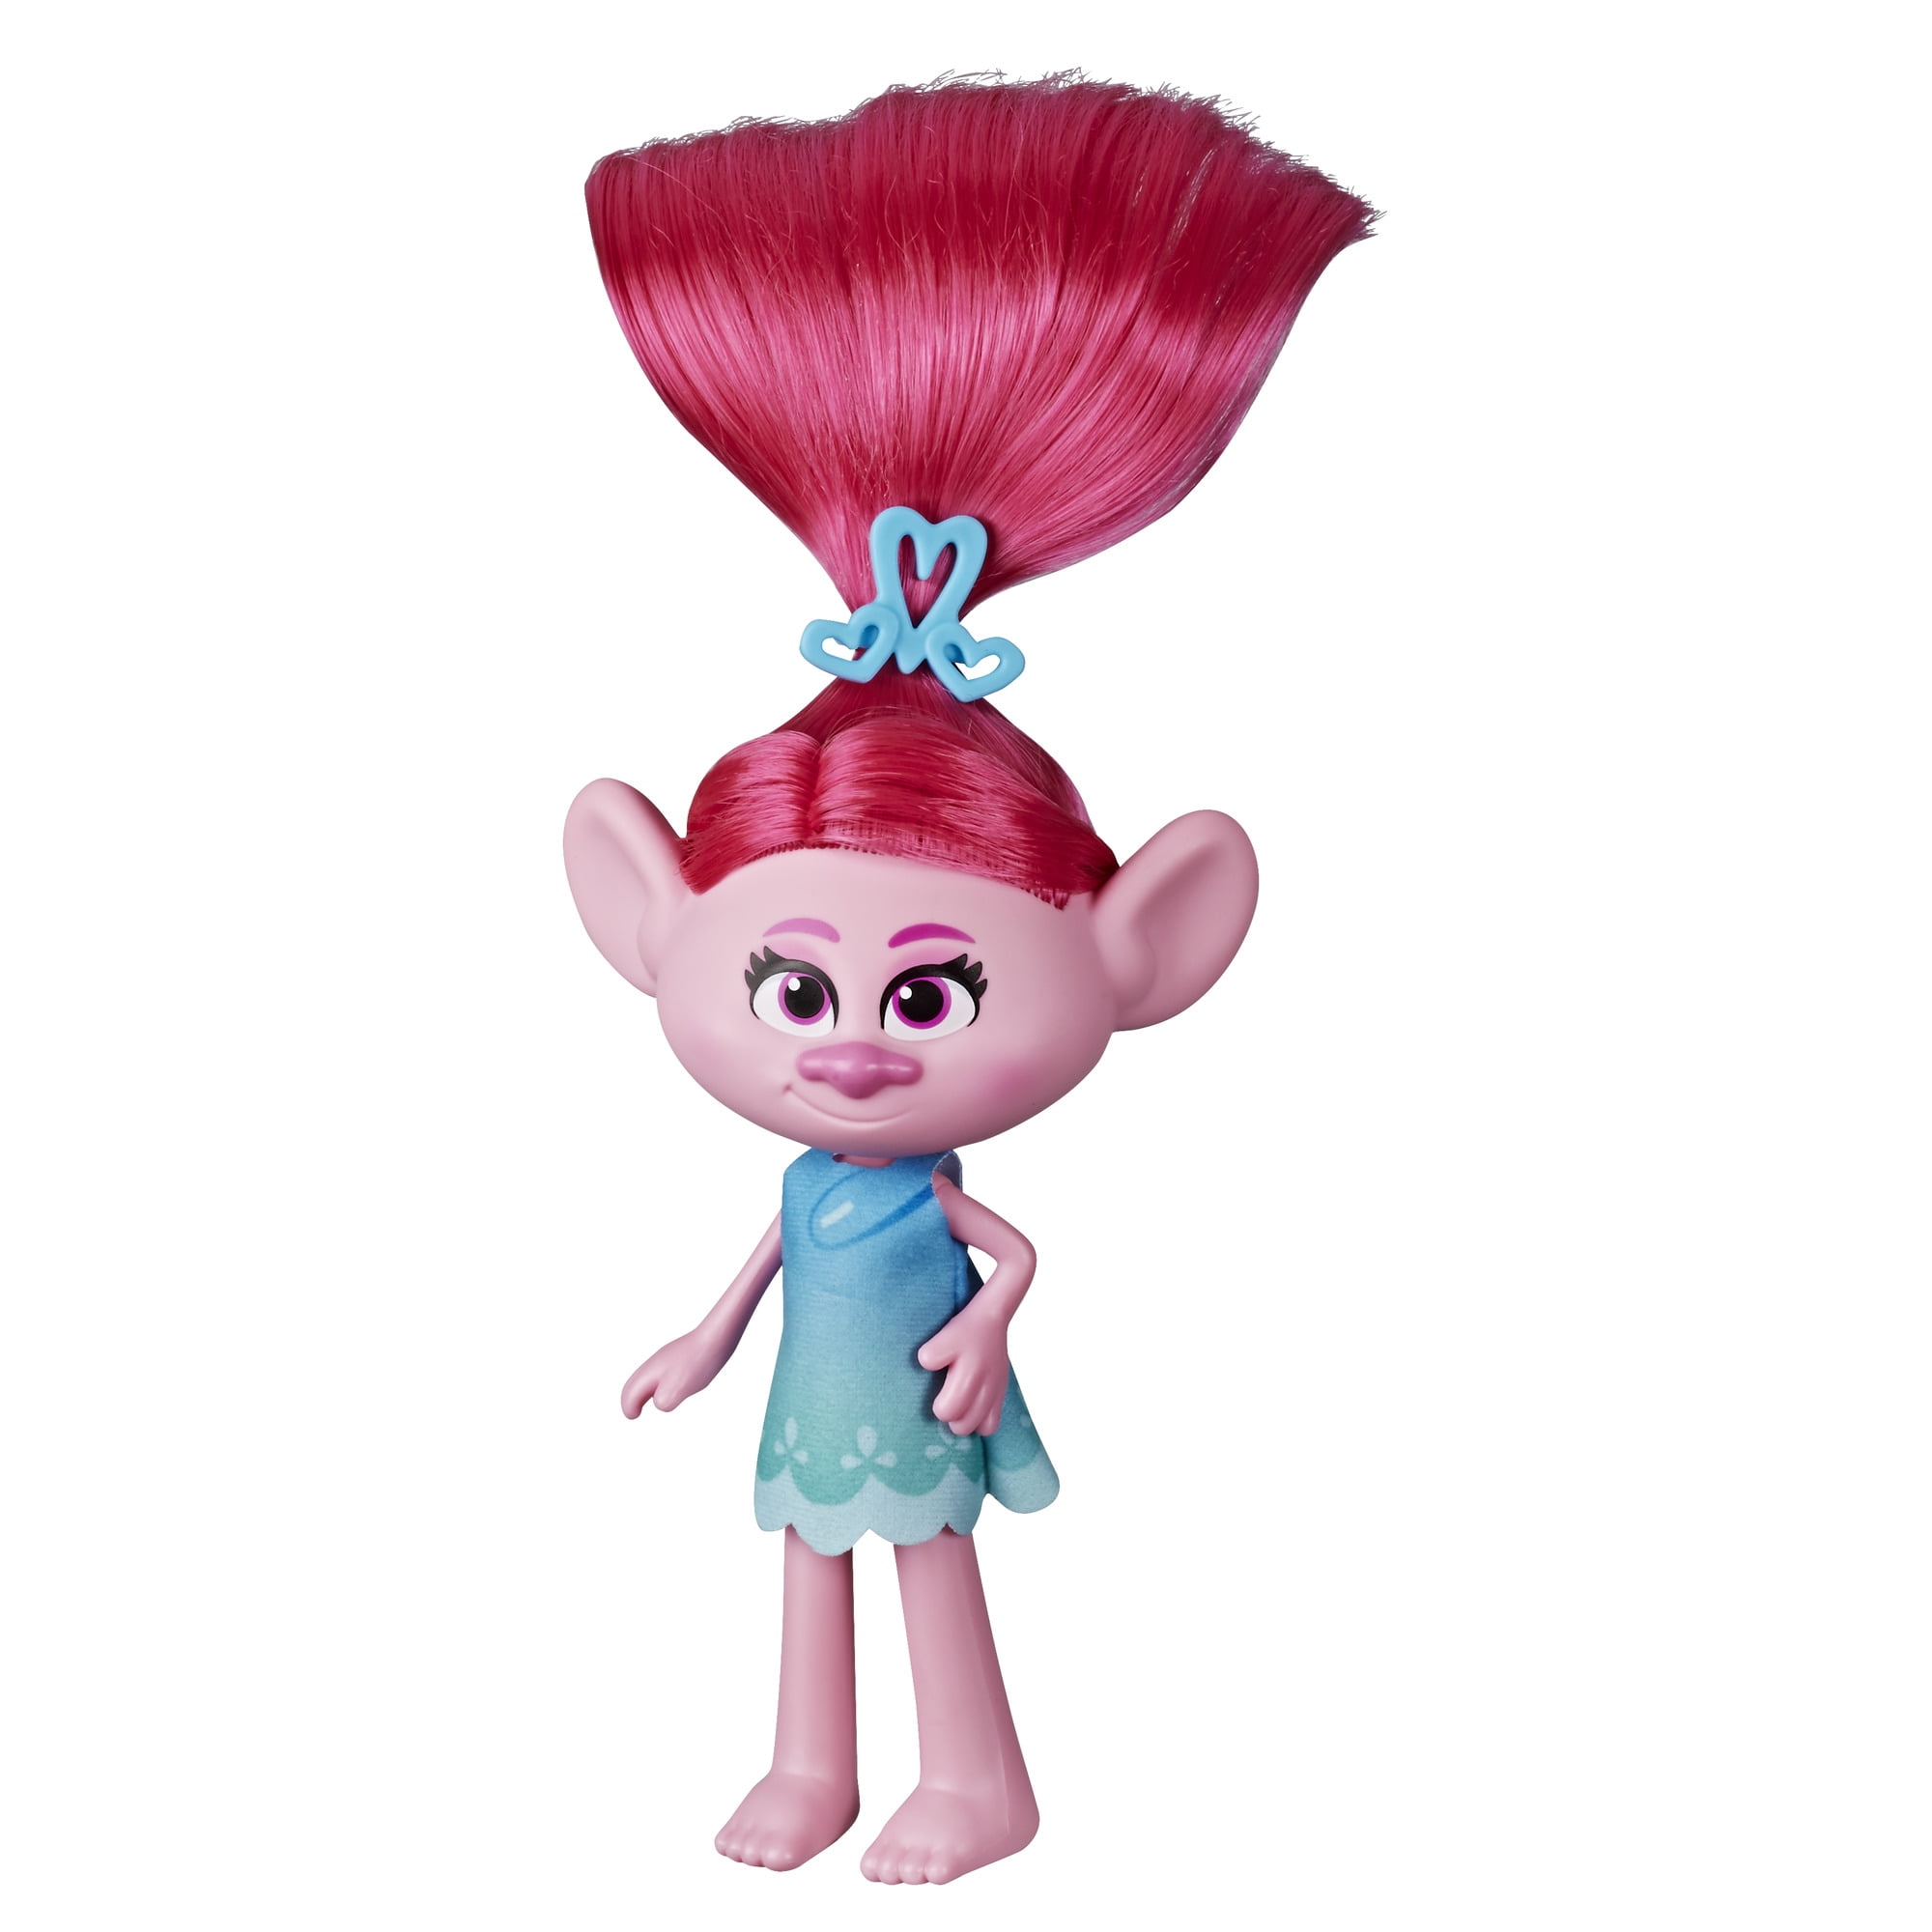 Princess Poppy Trolls Soft Plush Toy 30 cm Official Film Trolls Pink Hair Dream 